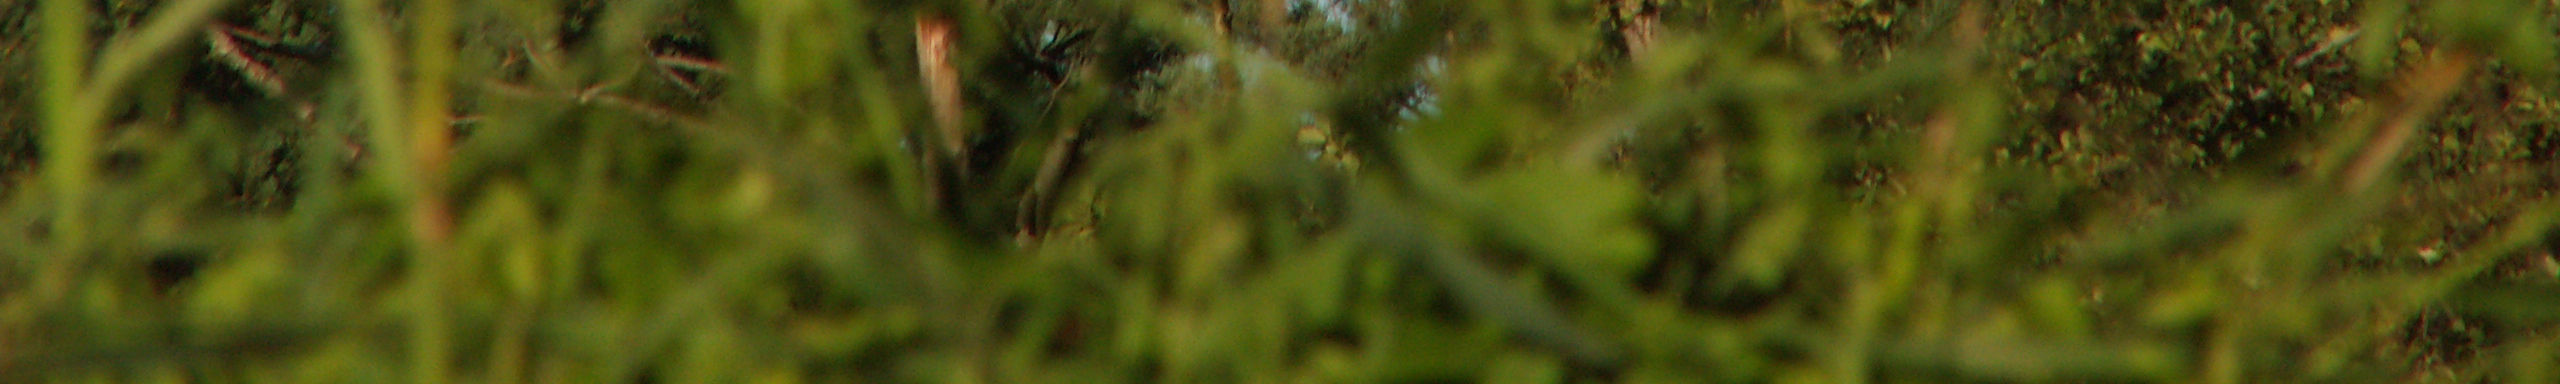 Lasy łęgowe na terenie badań reprezentowane są przez 4 typy zbiorowisk: Nadrzeczny łęg wierzbowy (Salicetum albo fragilis) Nadrzeczny łęg topolowy (Populetum albae) Łęg jesionowo olsowy (Fraxino